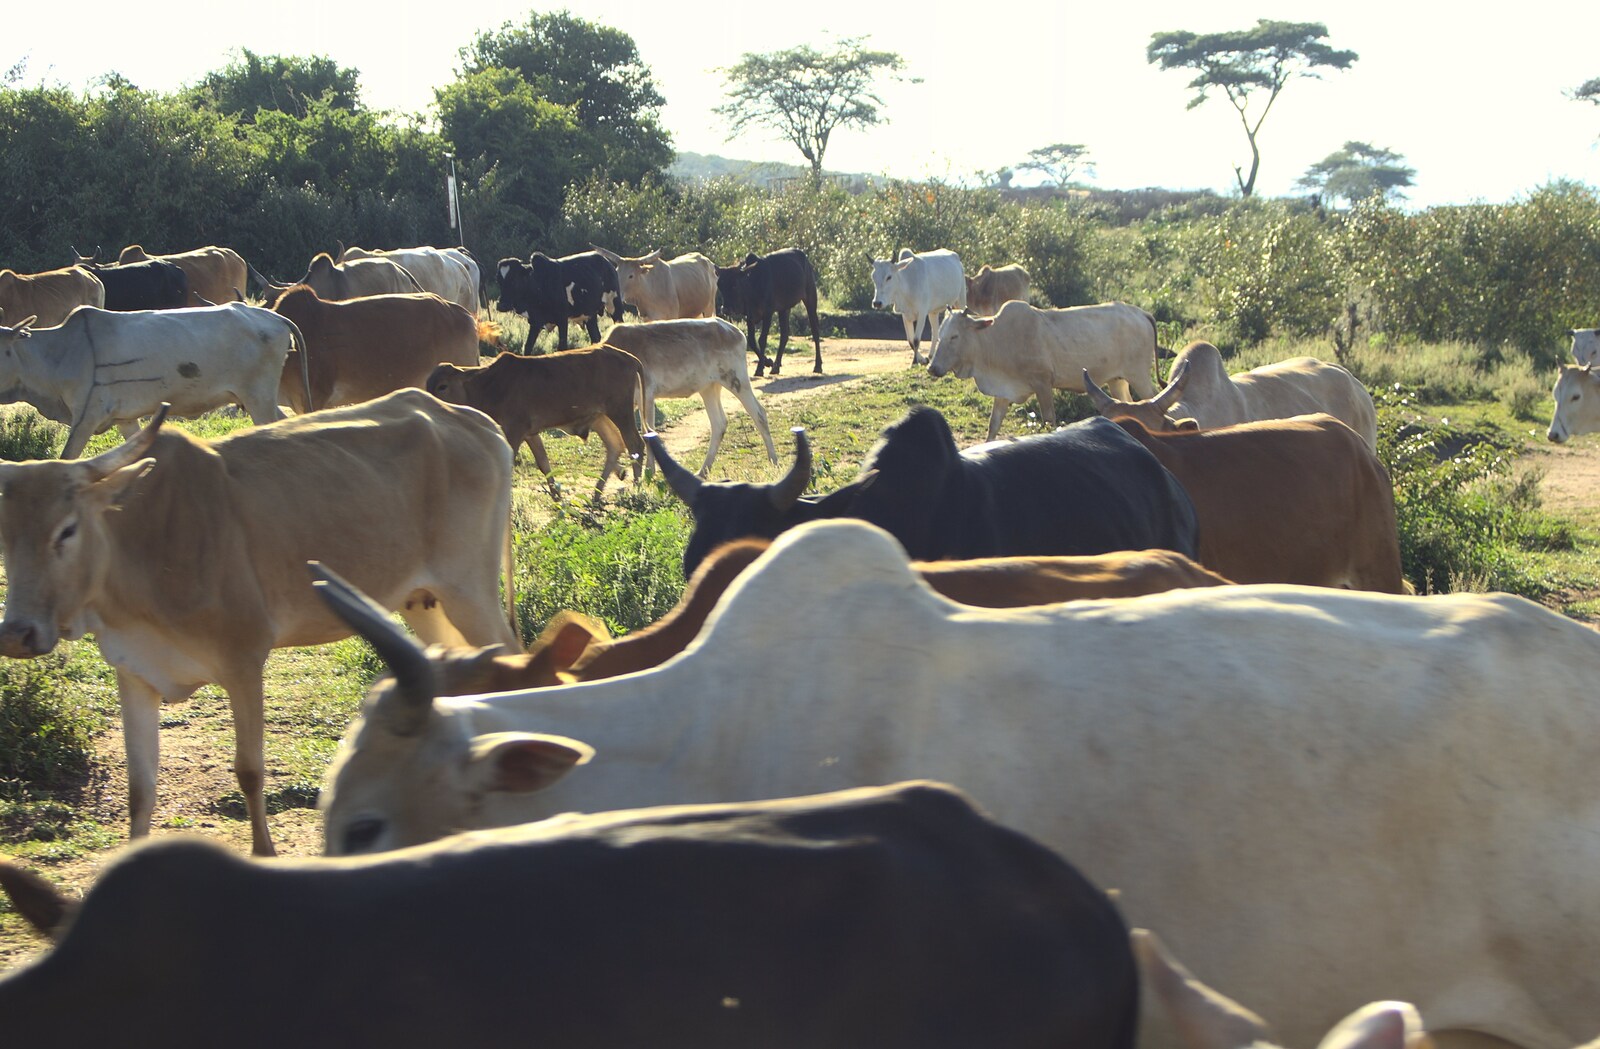 Cows are being herded from Maasai Mara Safari and a Maasai Village, Ololaimutia, Kenya - 5th November 2010